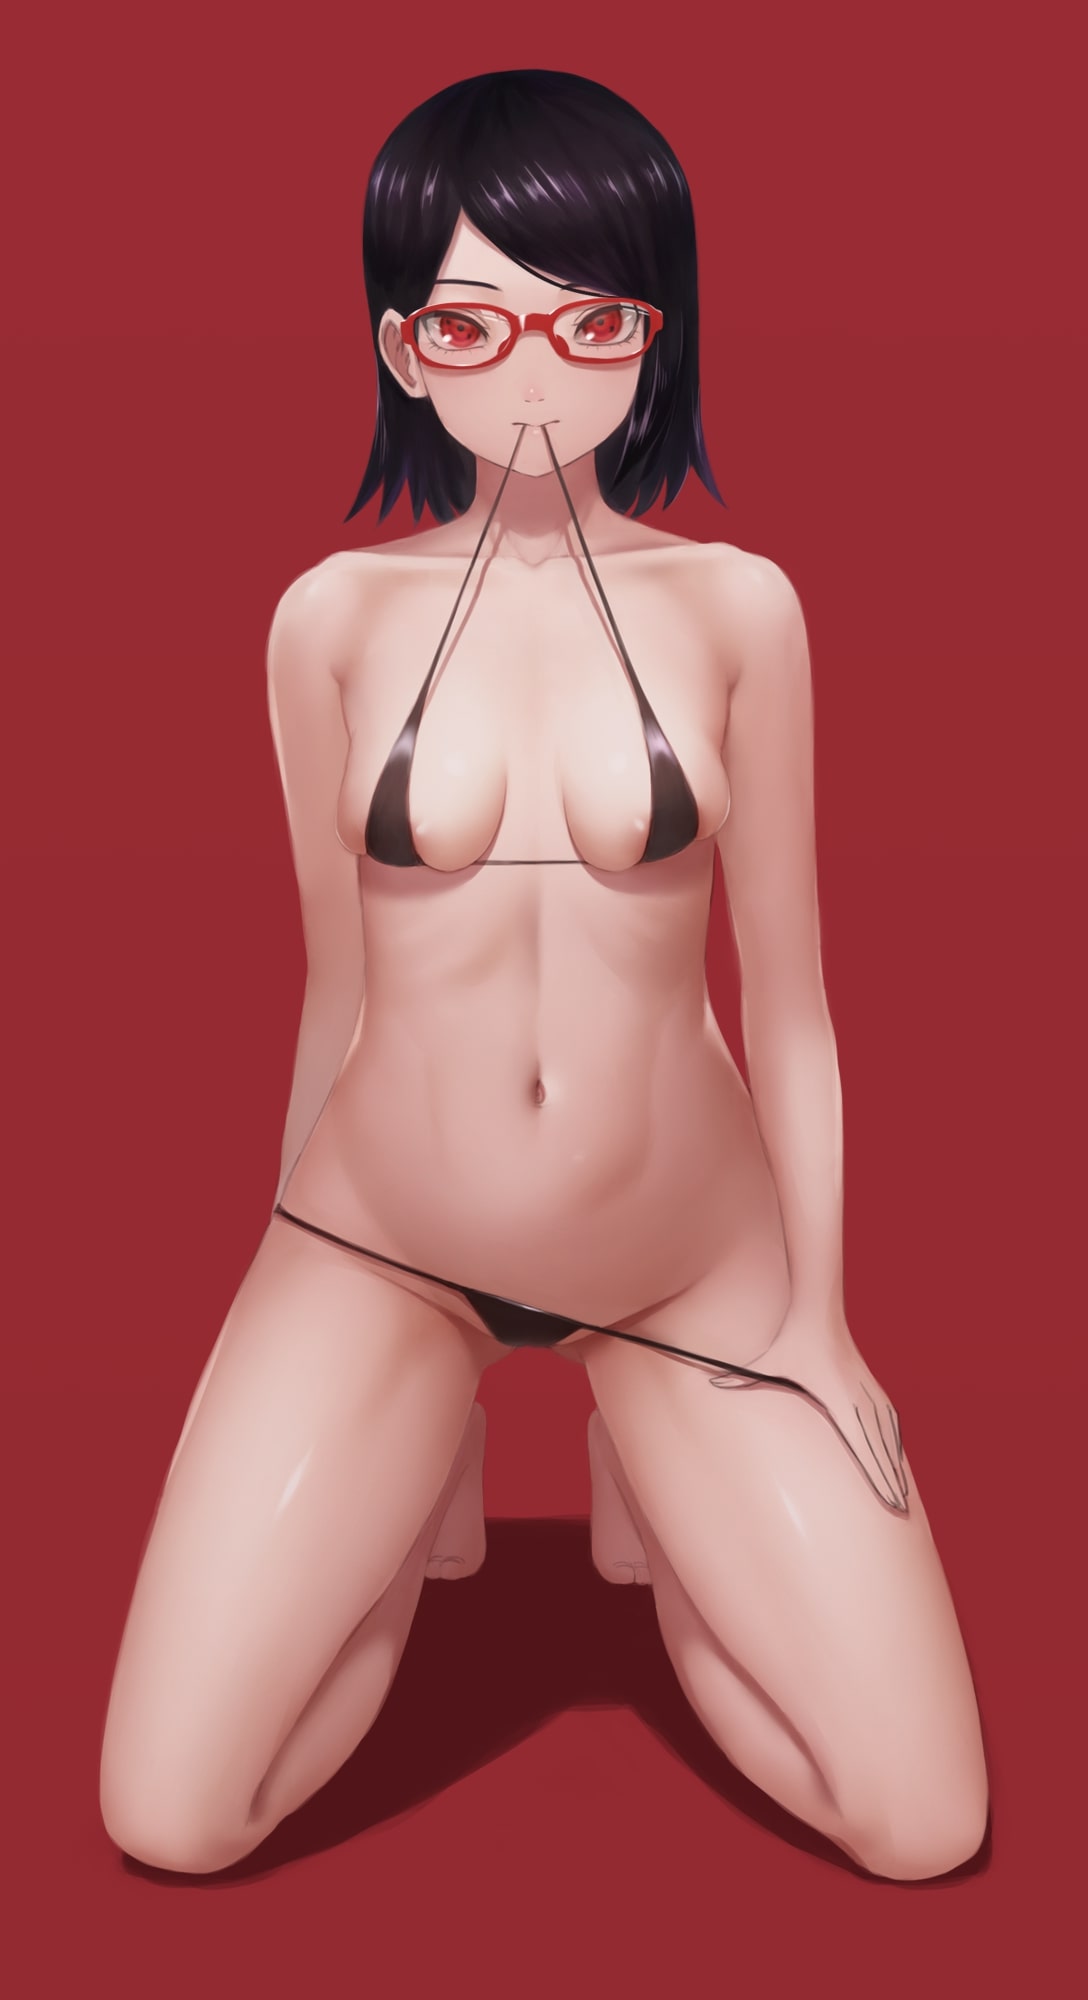 Sarada Uchiha On Micro Bikini by Miru | Boruto: Naruto Next Generations